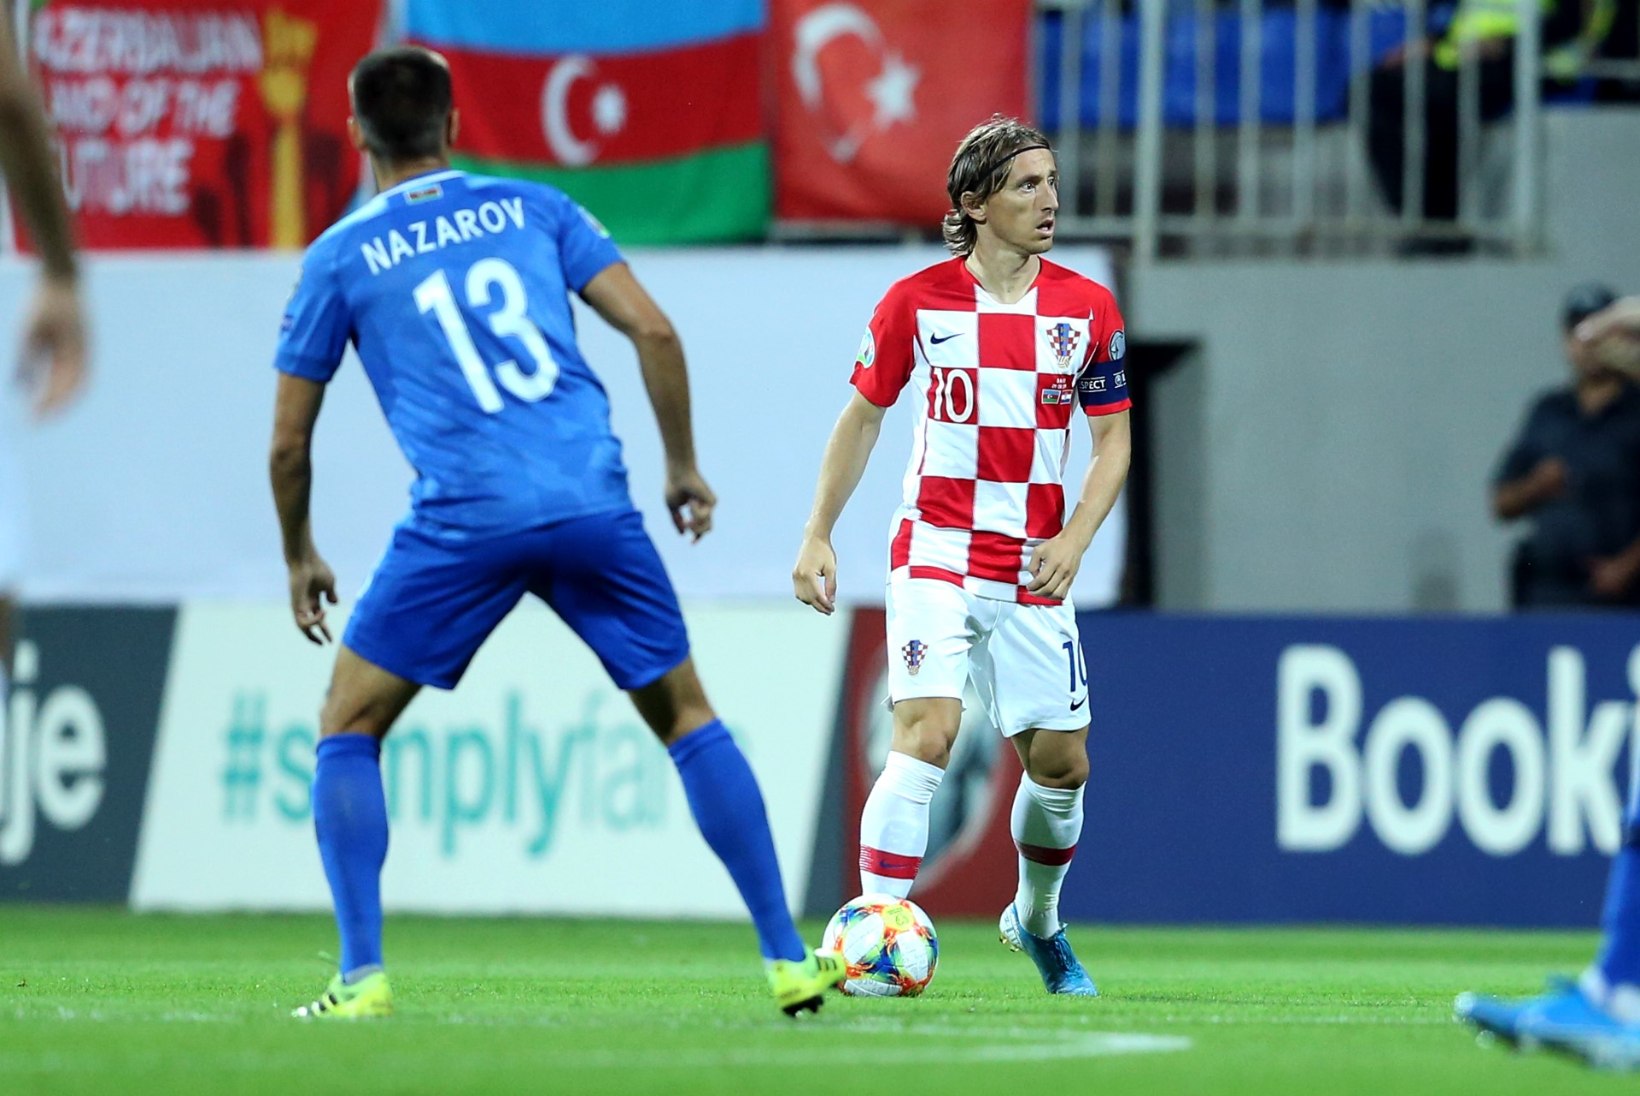 Maailma parima mängija väravast horvaatidele võiduks ei piisanud